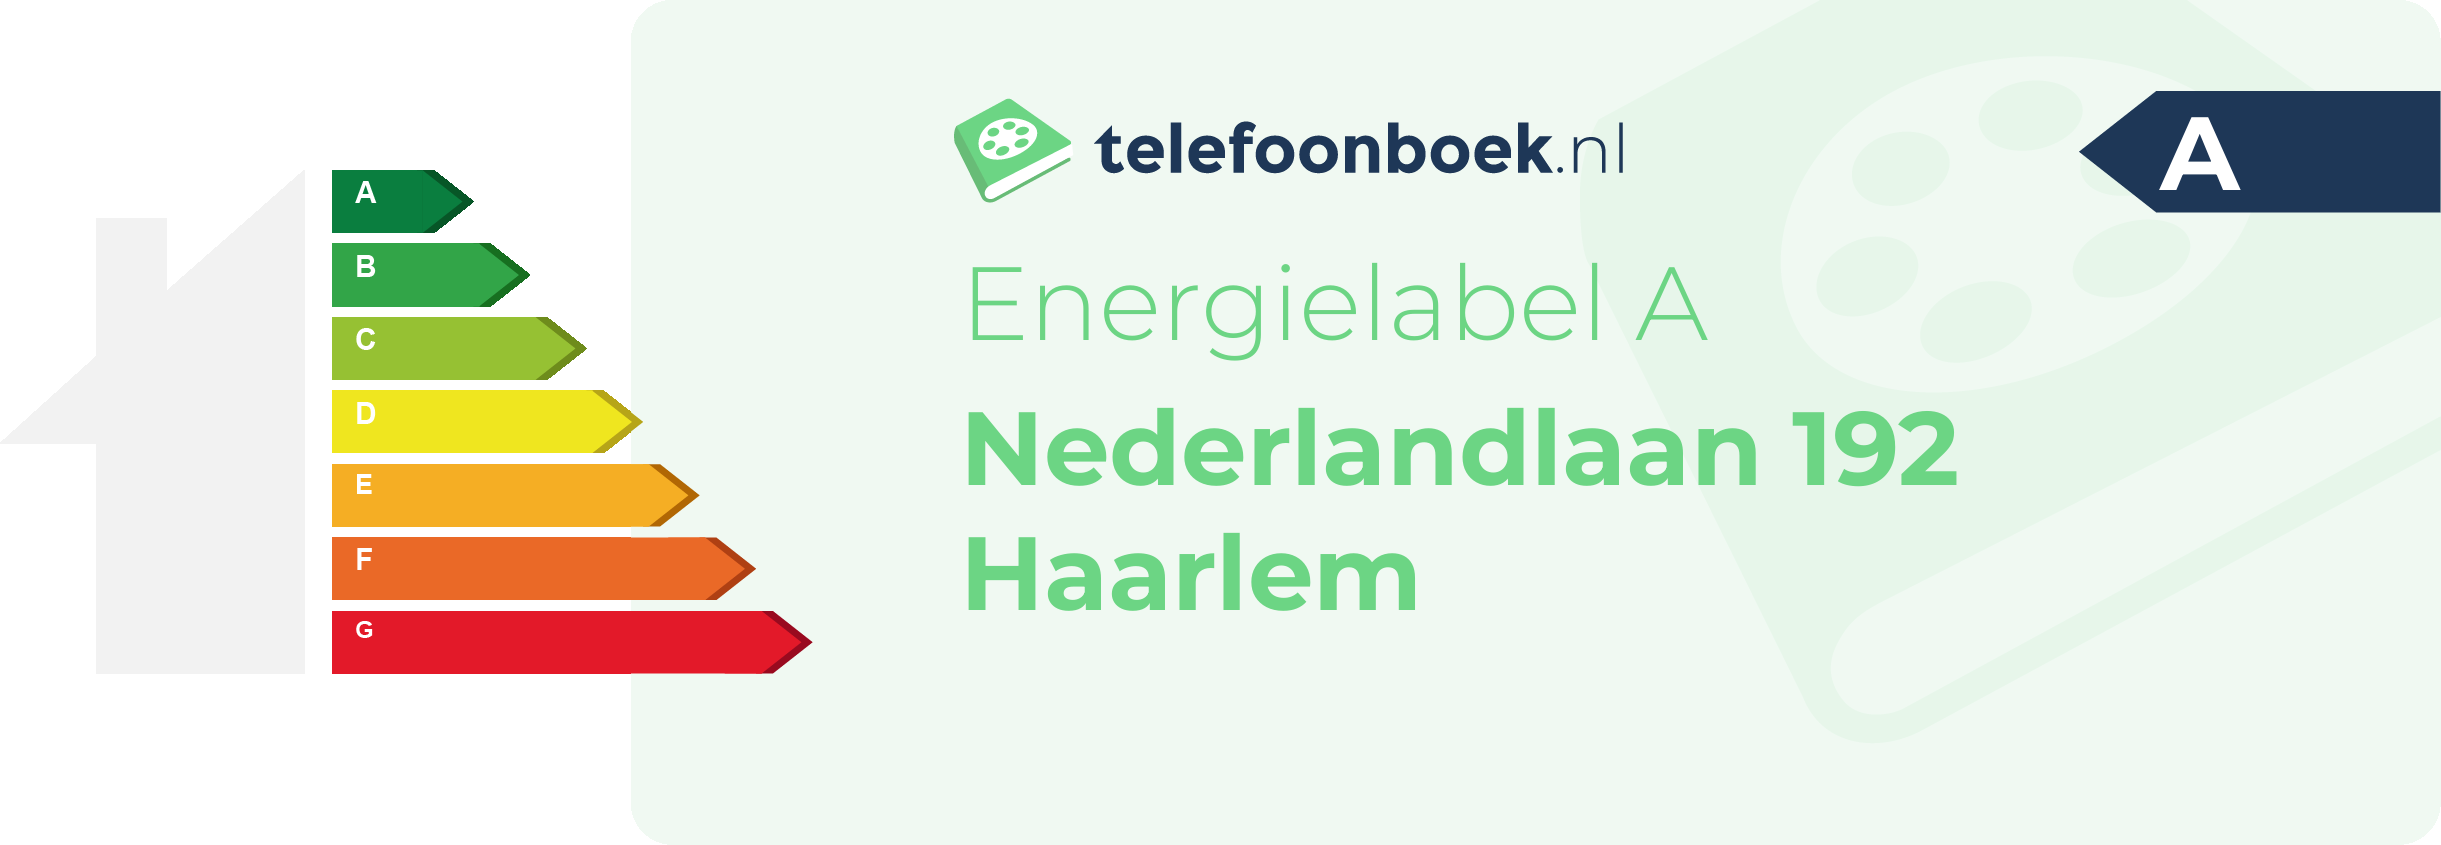 Energielabel Nederlandlaan 192 Haarlem